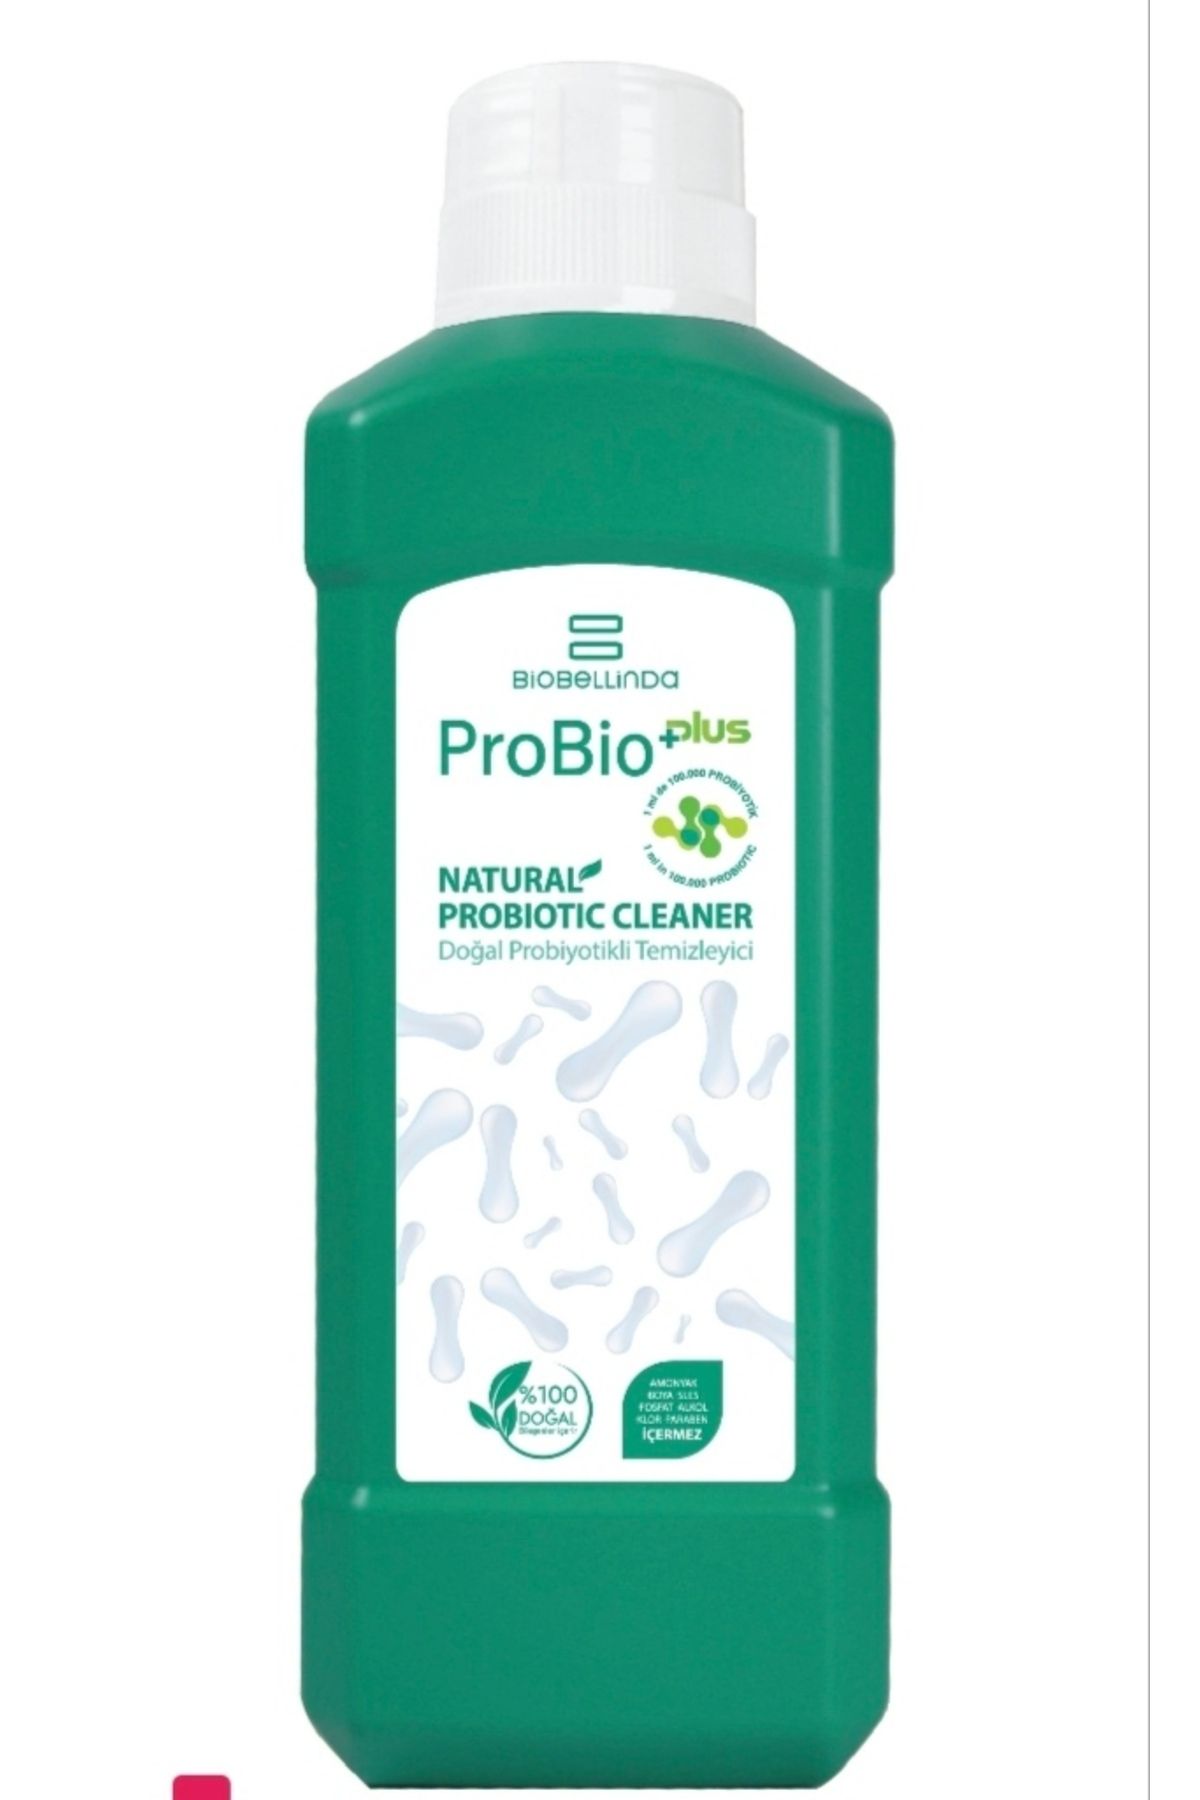 BioBellinda Probioplus Doğal Probiyotikli Temizleyici